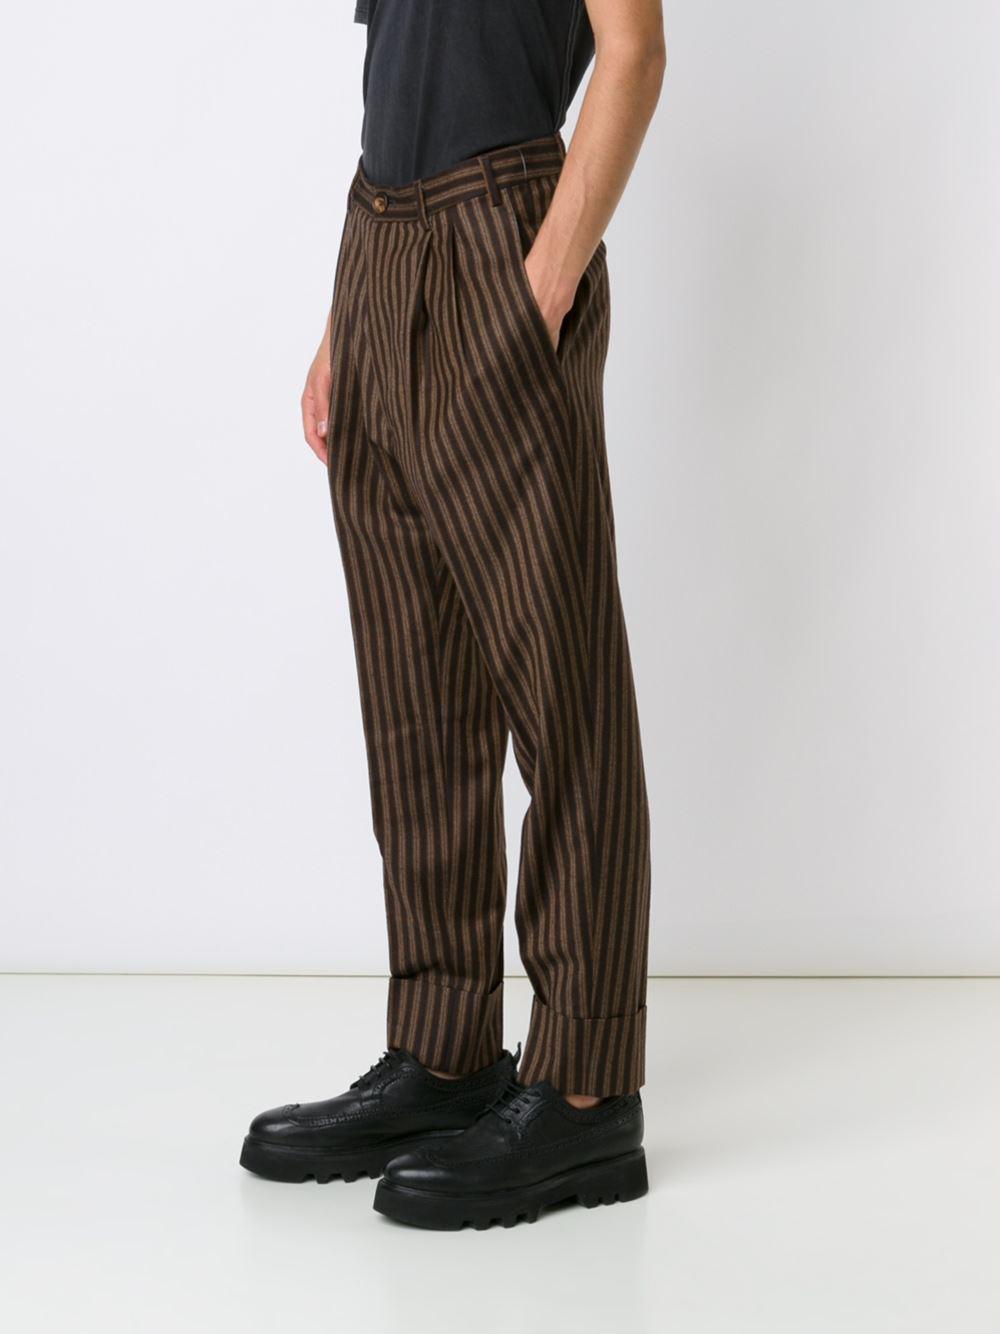 Vivienne Westwood Wool Pinstripe Pants in Brown for Men - Lyst